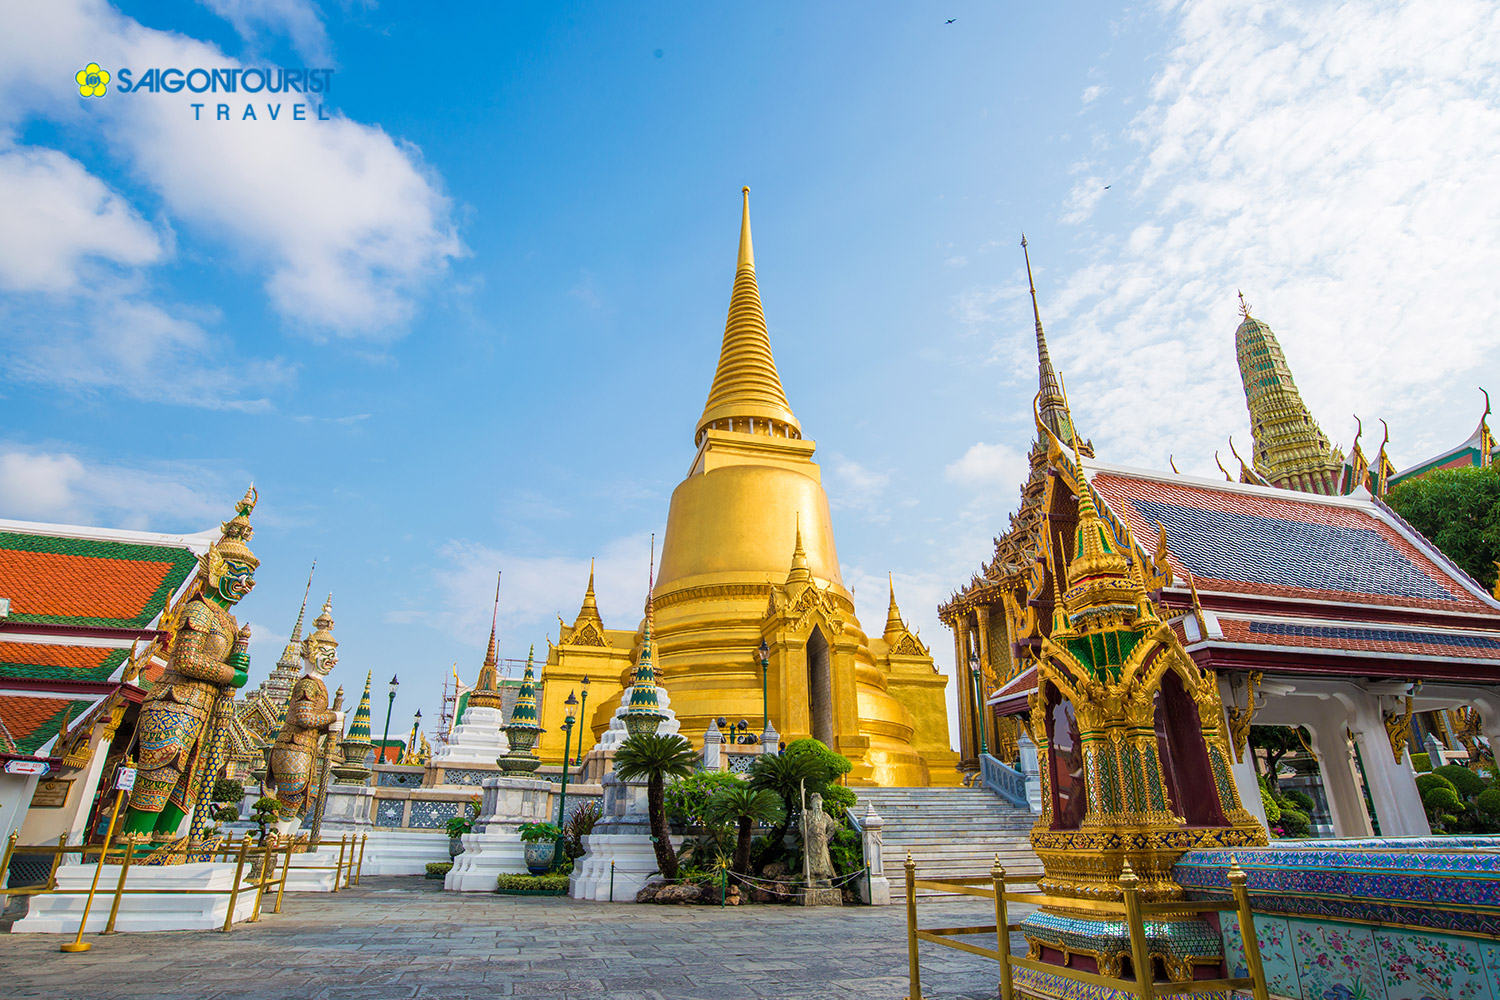 Du lịch Thái Lan [Bangkok - Pattaya] Vi vu charter - Đón tết tại xứ sở chùa Vàng